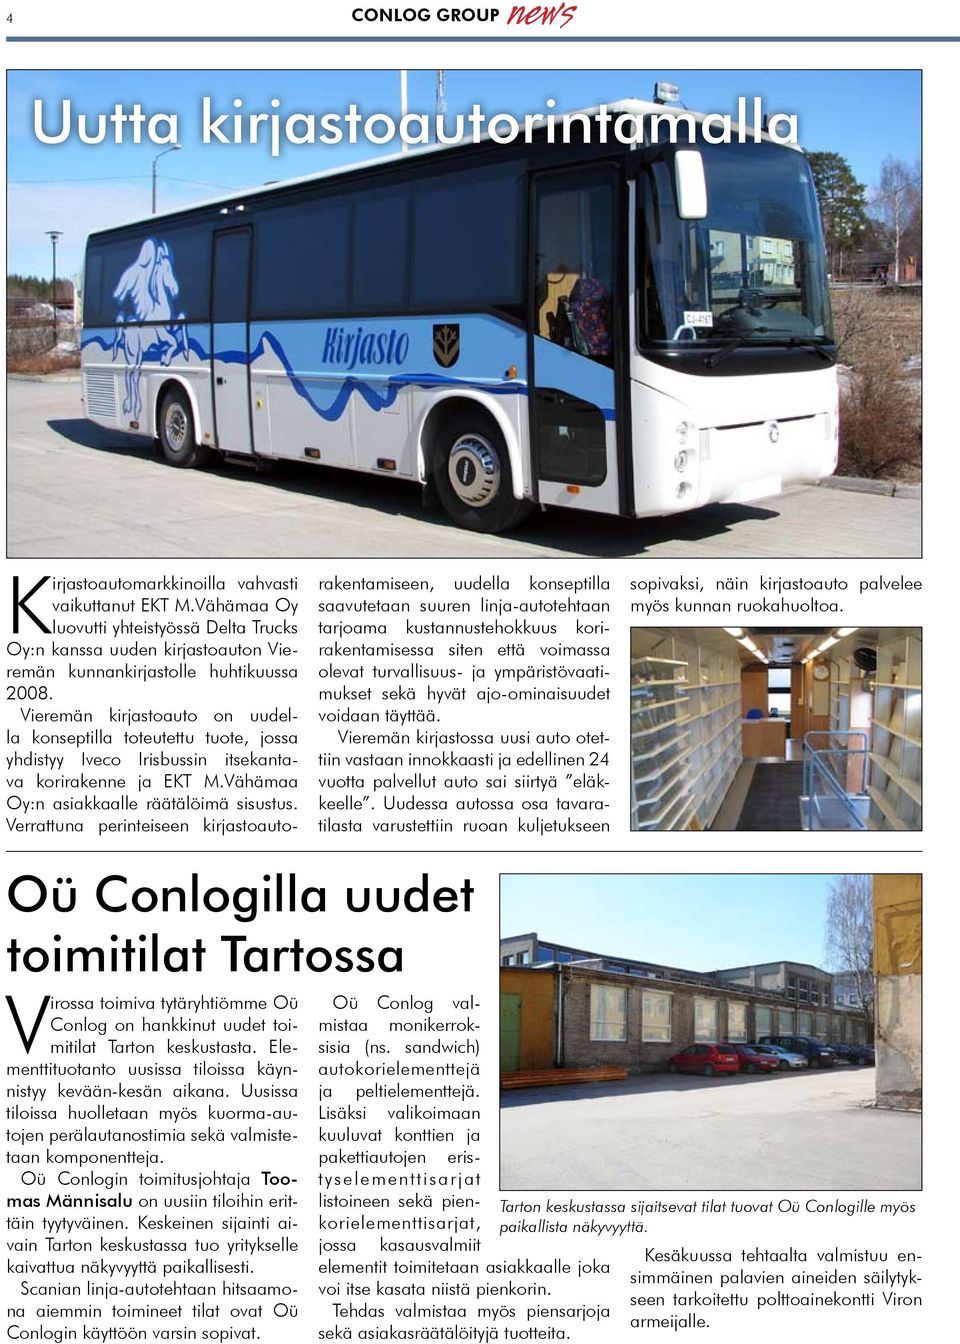 Vieremän kirjastoauto on uudella konseptilla toteutettu tuote, jossa yhdistyy Iveco Irisbussin itsekantava korirakenne ja EKT M.Vähämaa Oy:n asiakkaalle räätälöimä sisustus.